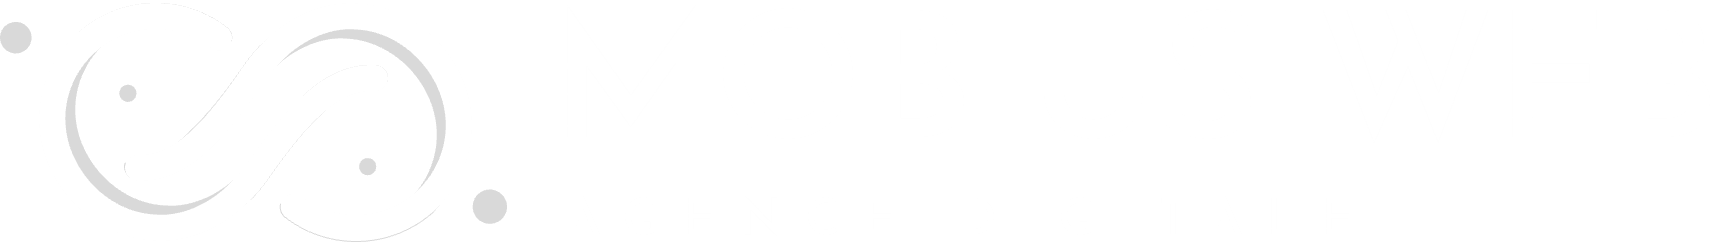 Logo Mobius Web - Création de sites Internet et Agence Digitale pour PME